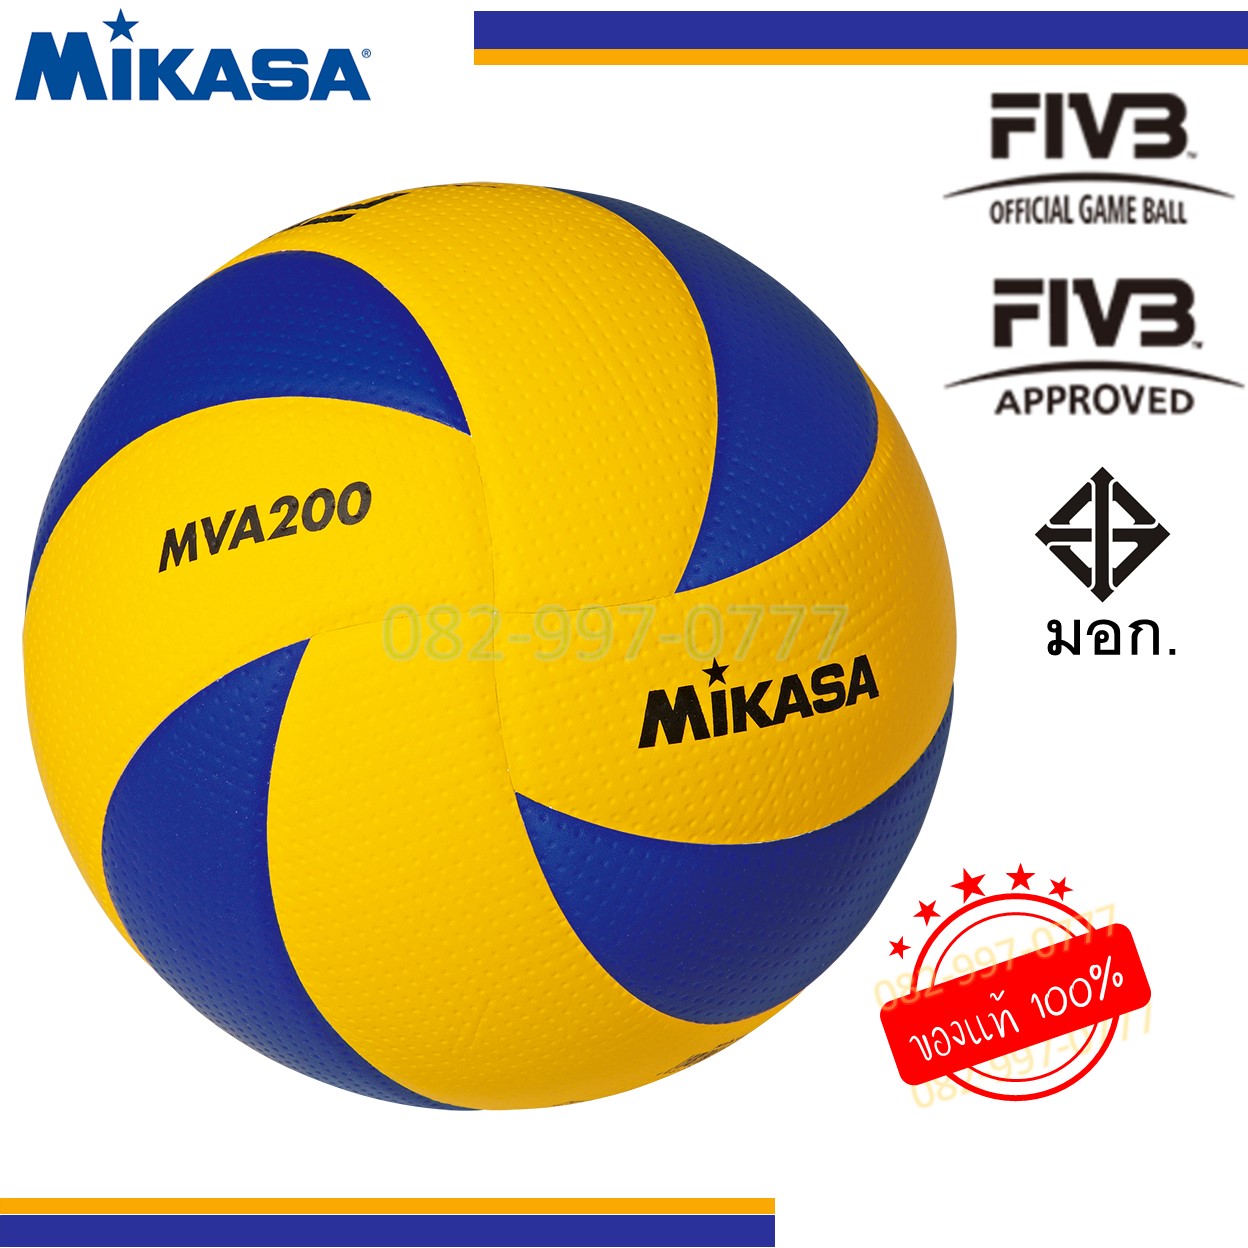 ลูกวอลเลย์บอล MIKASA MVA200 รุ่นดีที่สุด ใช้ในการแข่งนานาชาติ